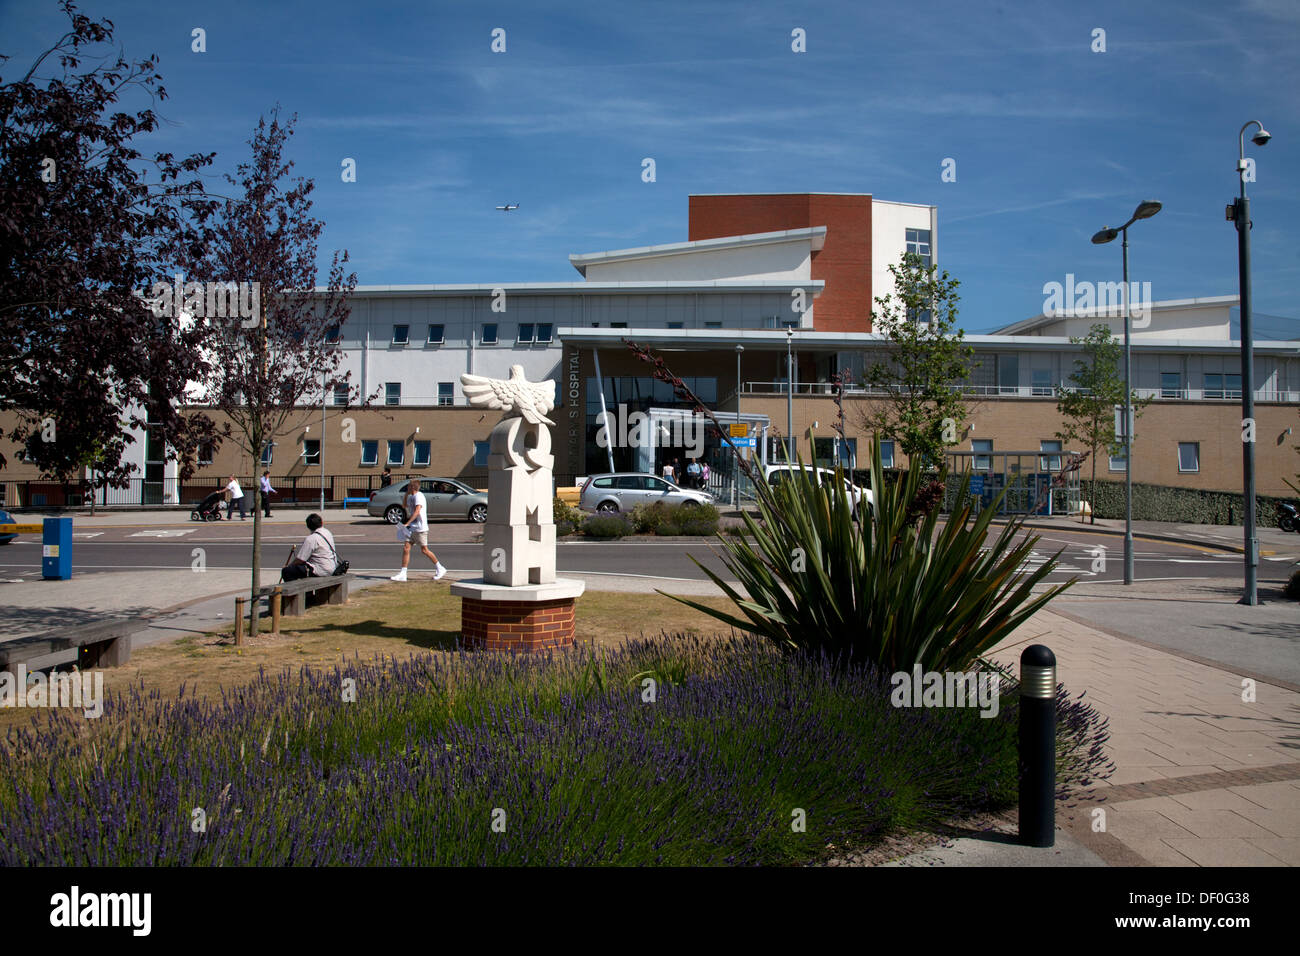 L'hôpital Queen Mary de Londres Angleterre Roehampton Banque D'Images